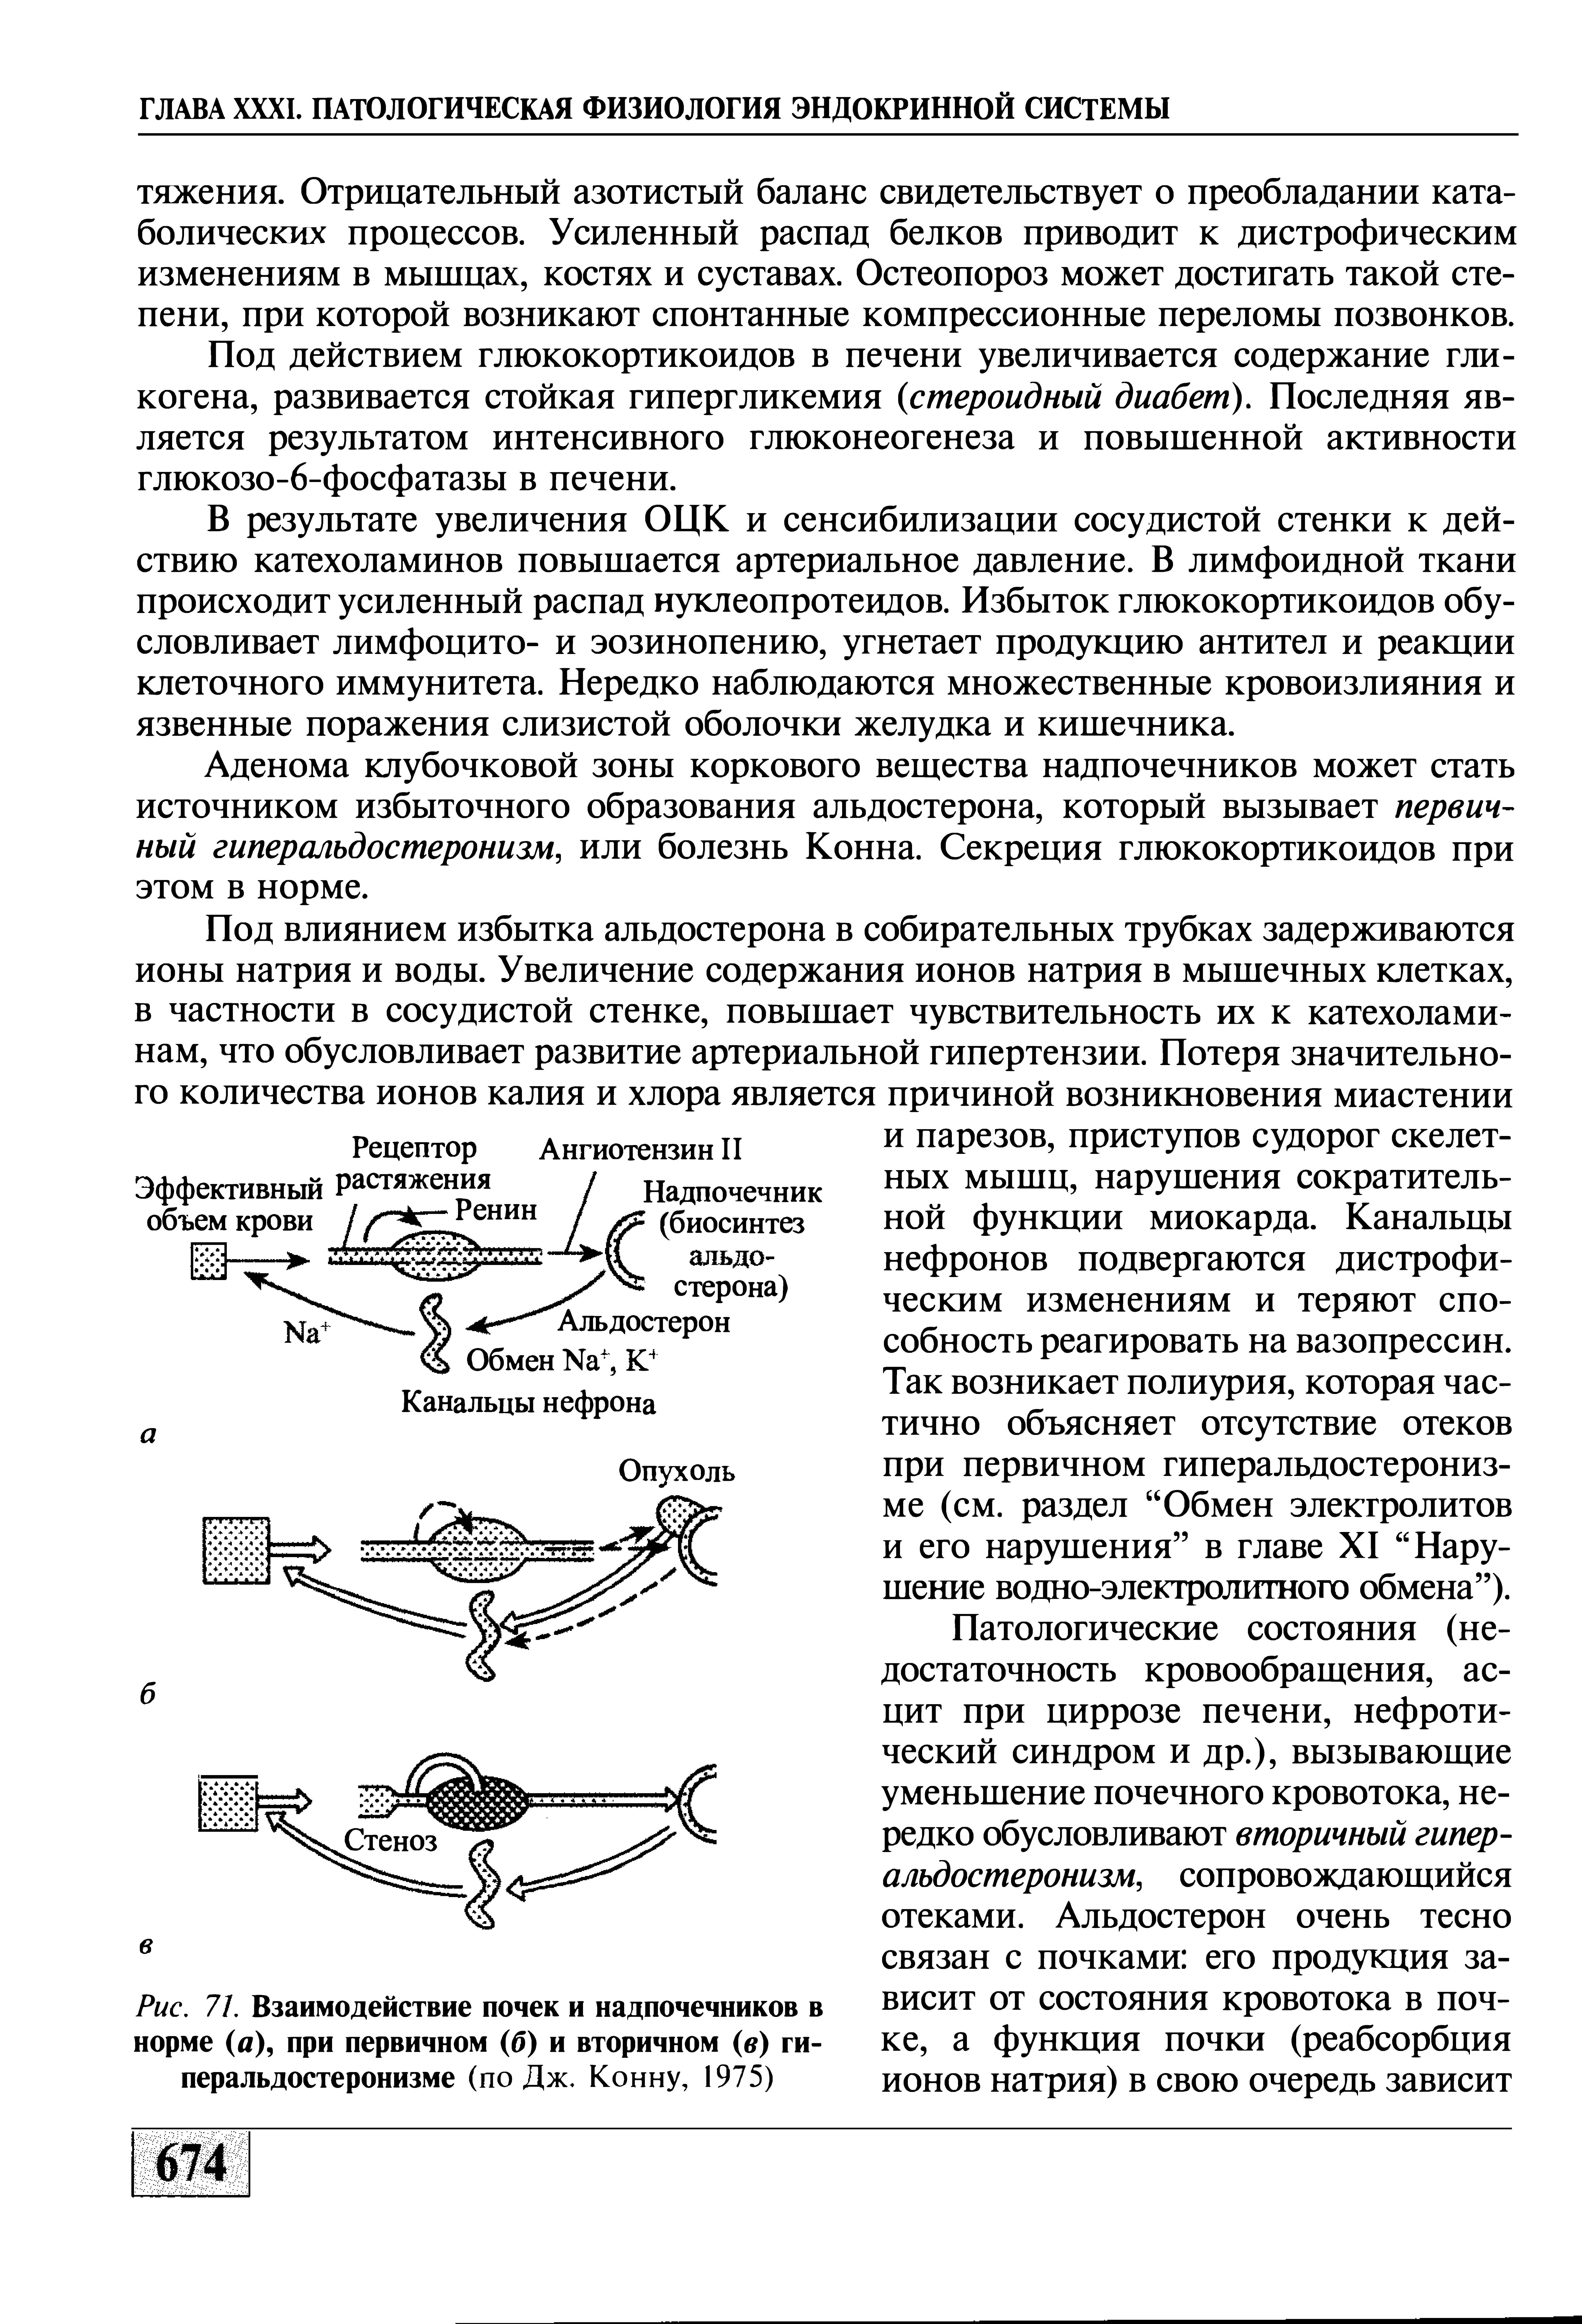 Рис. 71. Взаимодействие почек и надпочечников в норме (а), при первичном (б) и вторичном (в) гиперальдостеронизме (по Дж. Конну, 1975)...